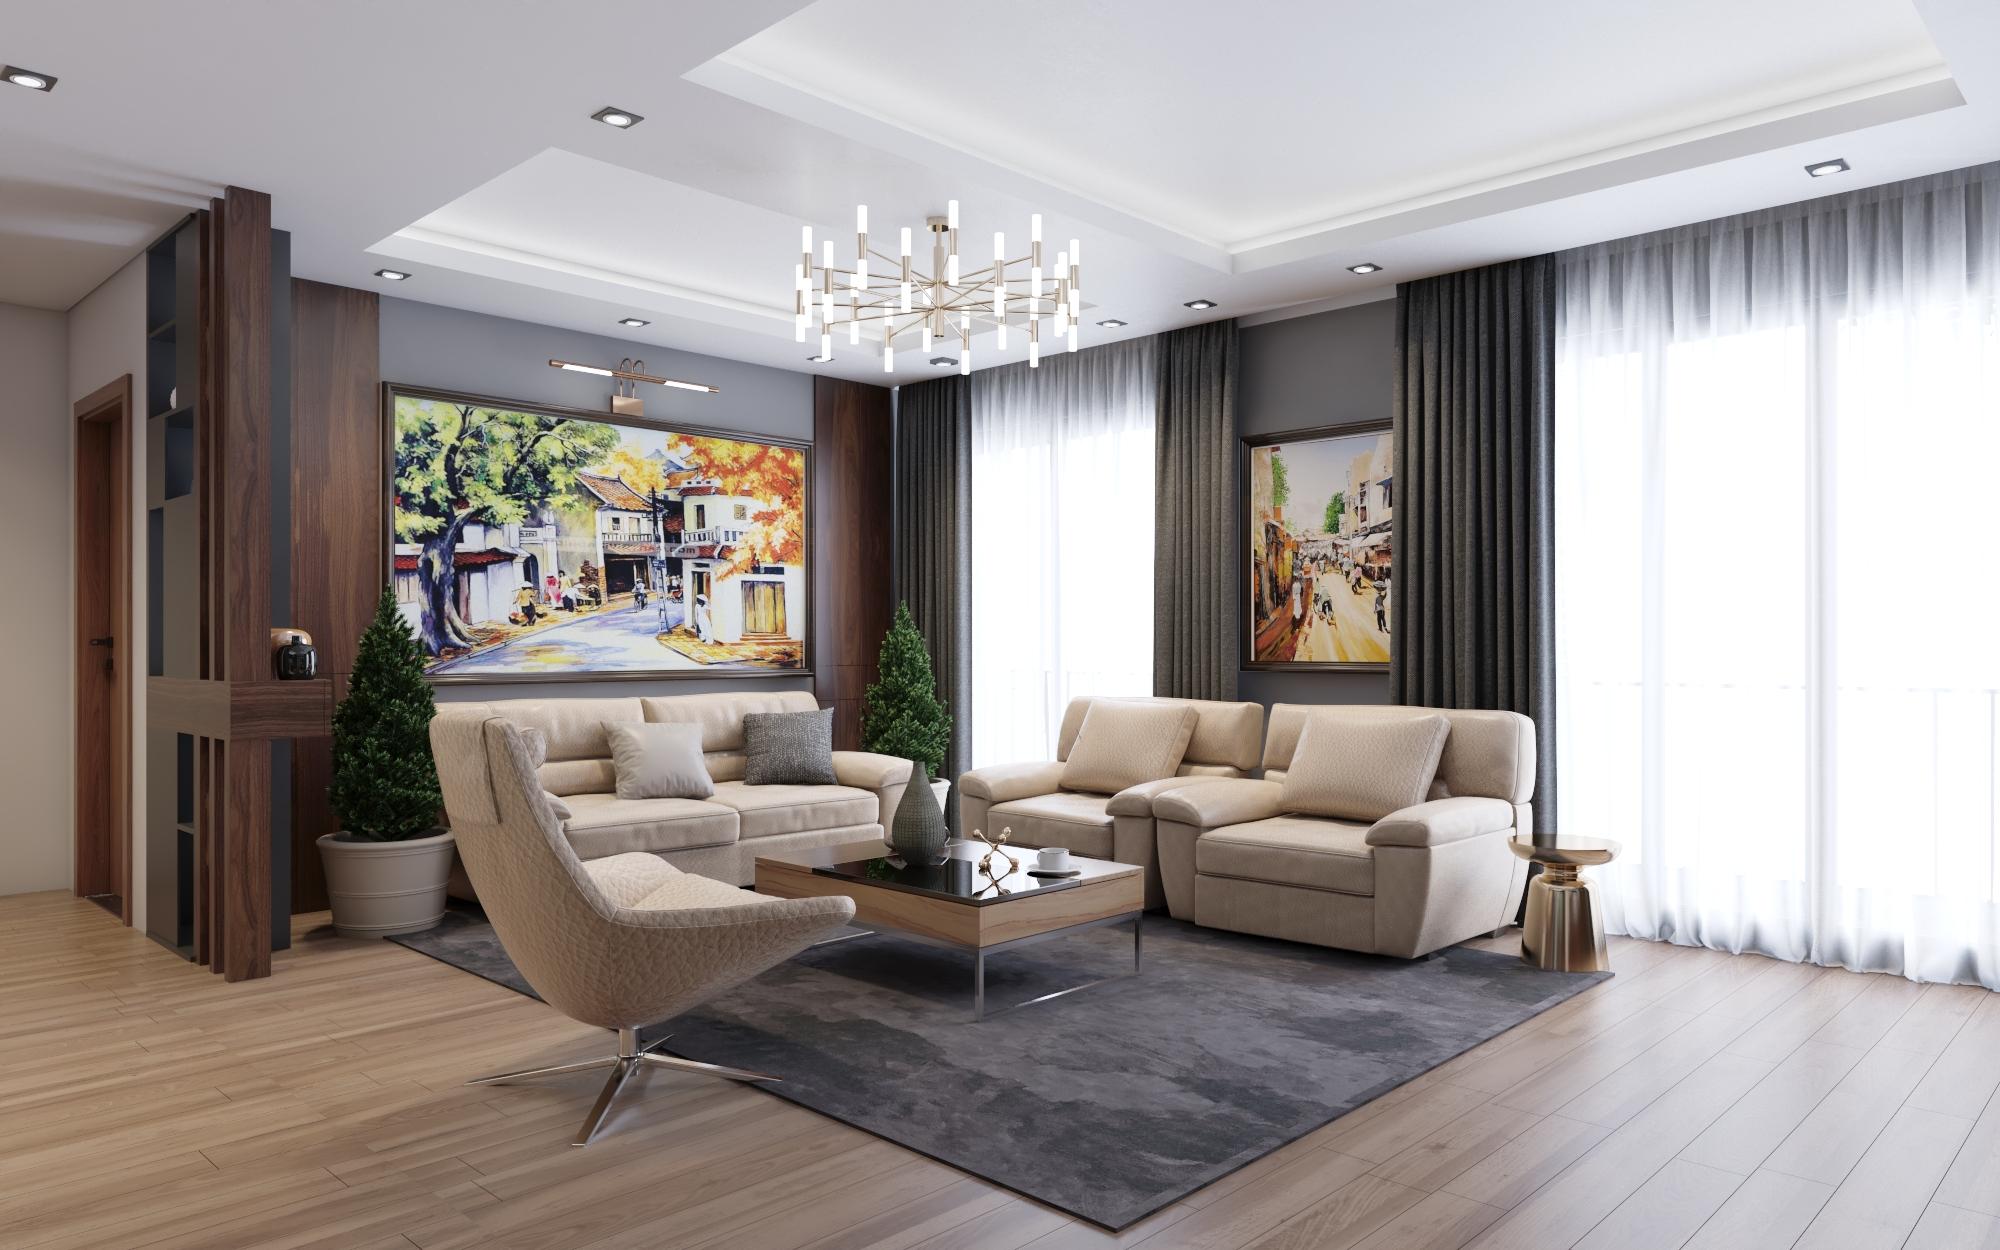  Thiết kế nội thất chung cư Goldmarkcity - 143m2 Sapphire2 - 03 - Phong cách Hiện đại